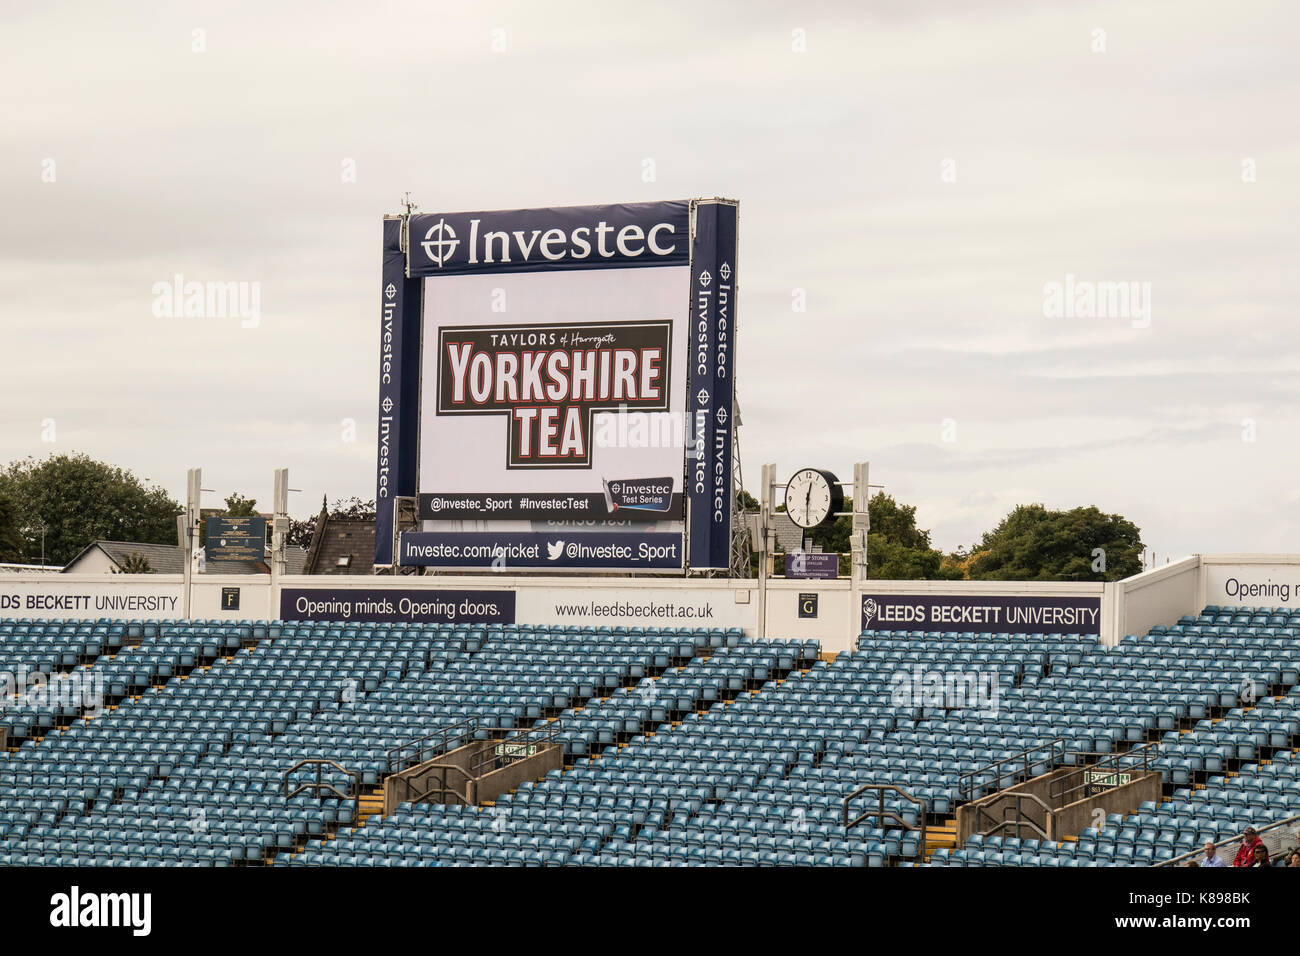 Die elektronische Video replay Board bei Headingley Cricket Ground, Leeds, Anzeigen Werbung Bilder und Investec - die Sponsoren. Stockfoto